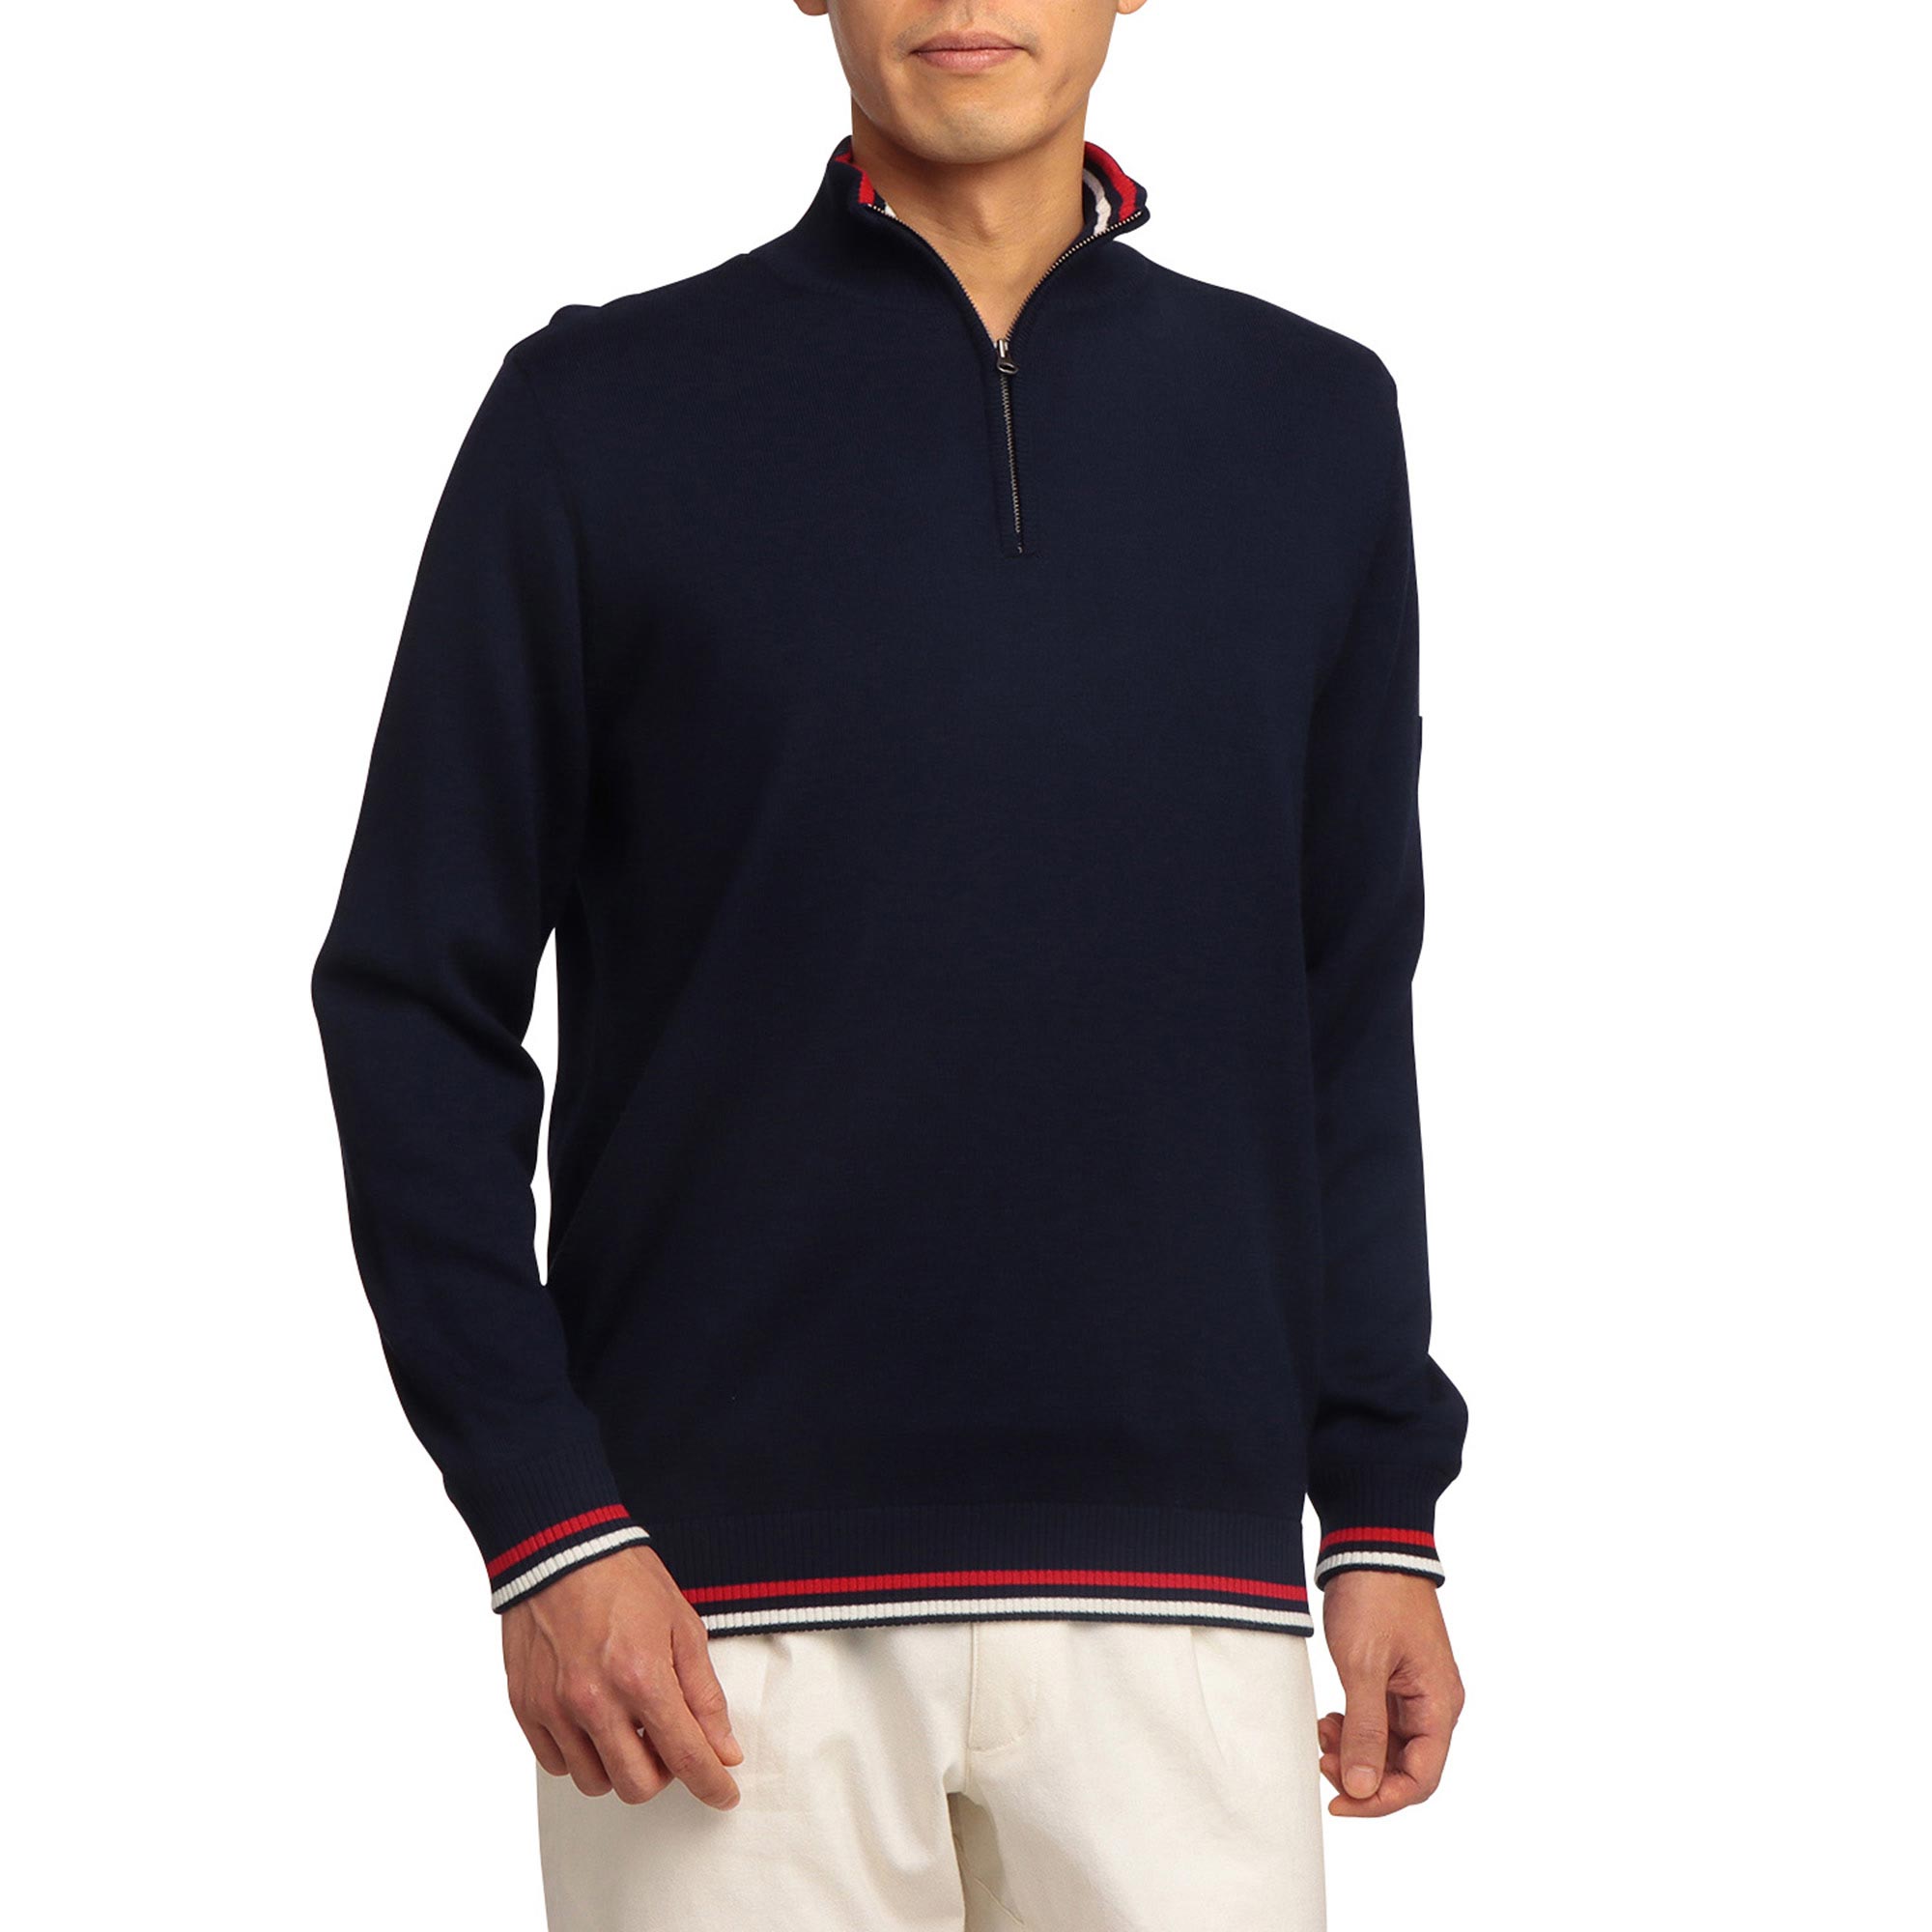 ハーフジップアップセーター[メンズ]|E2MC1525|セーター|ゴルフウエア